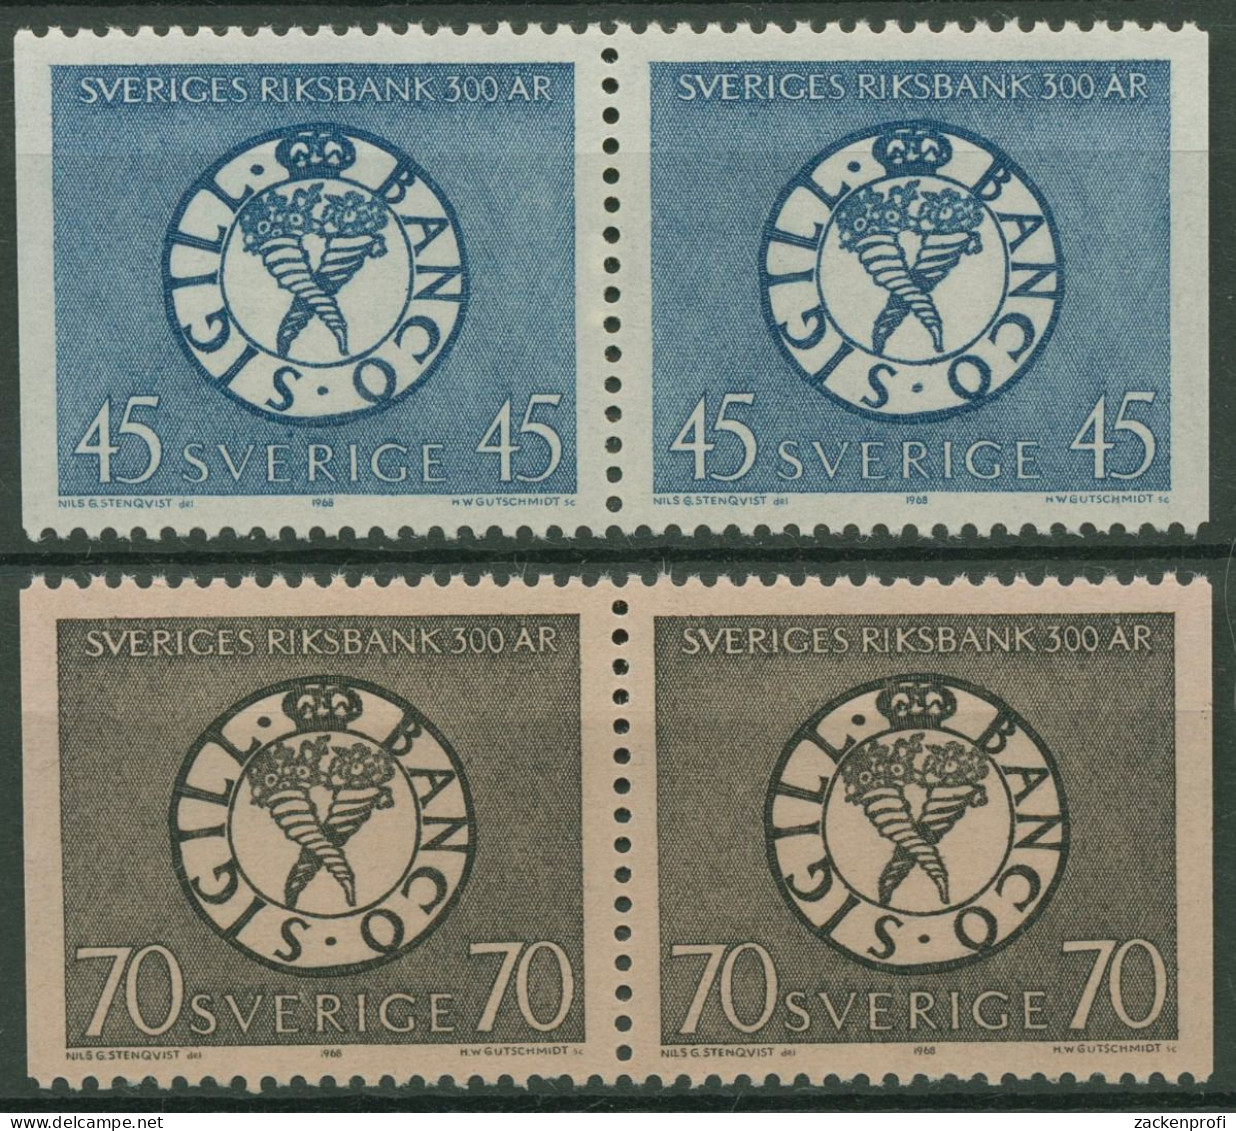 Schweden 1968 Schwedische Reichsbank Siegel 603/04 Dl/Dr Paare Postfrisch - Nuovi